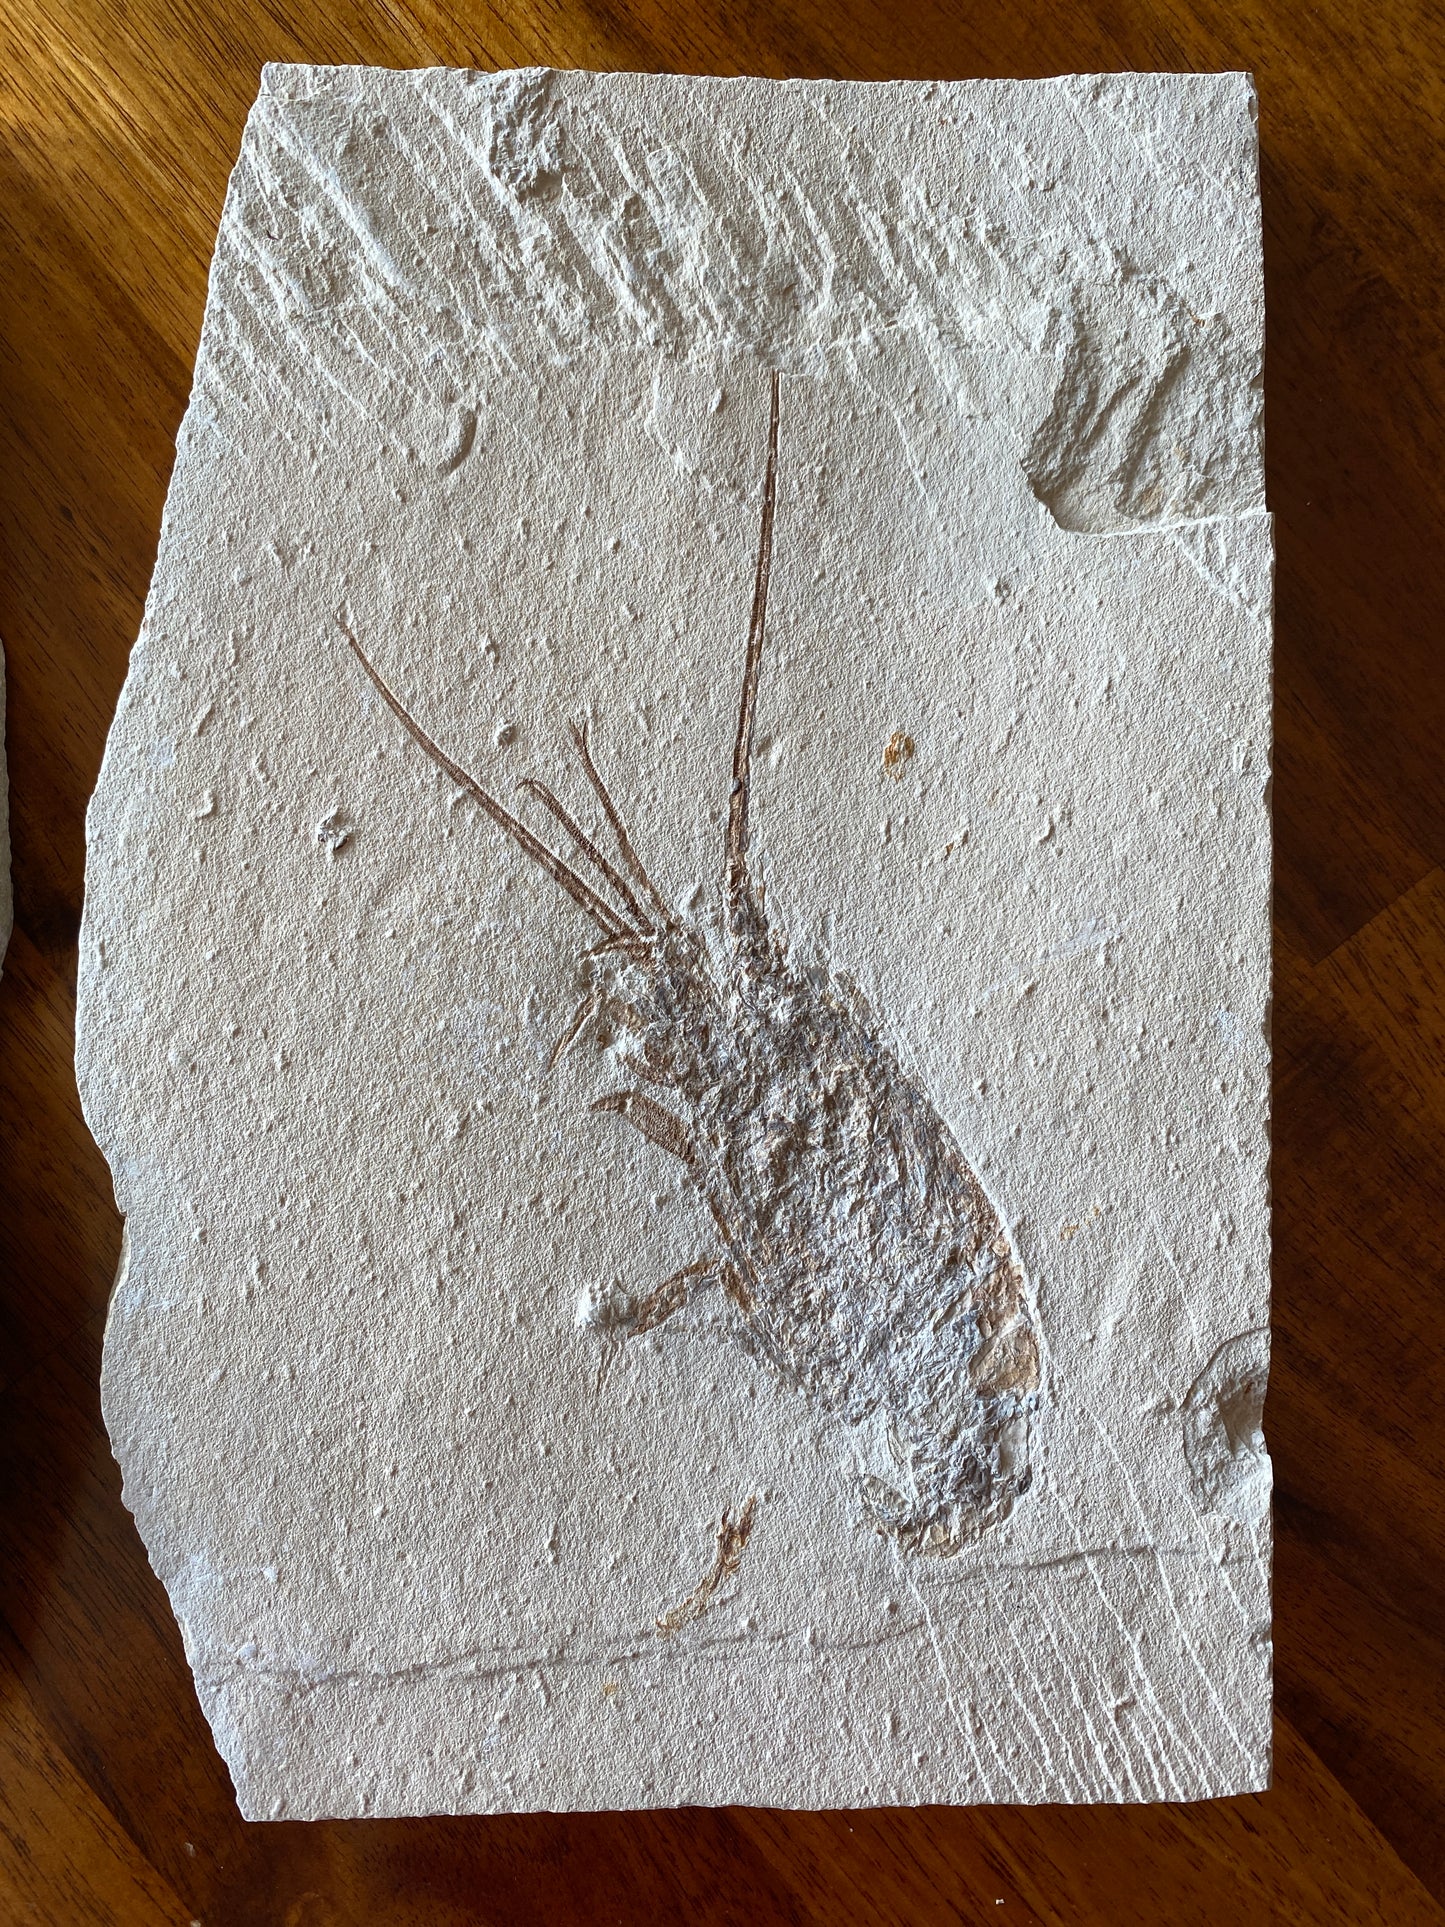 Fossil Lobster (Palinurus), Haqil, Lebanon